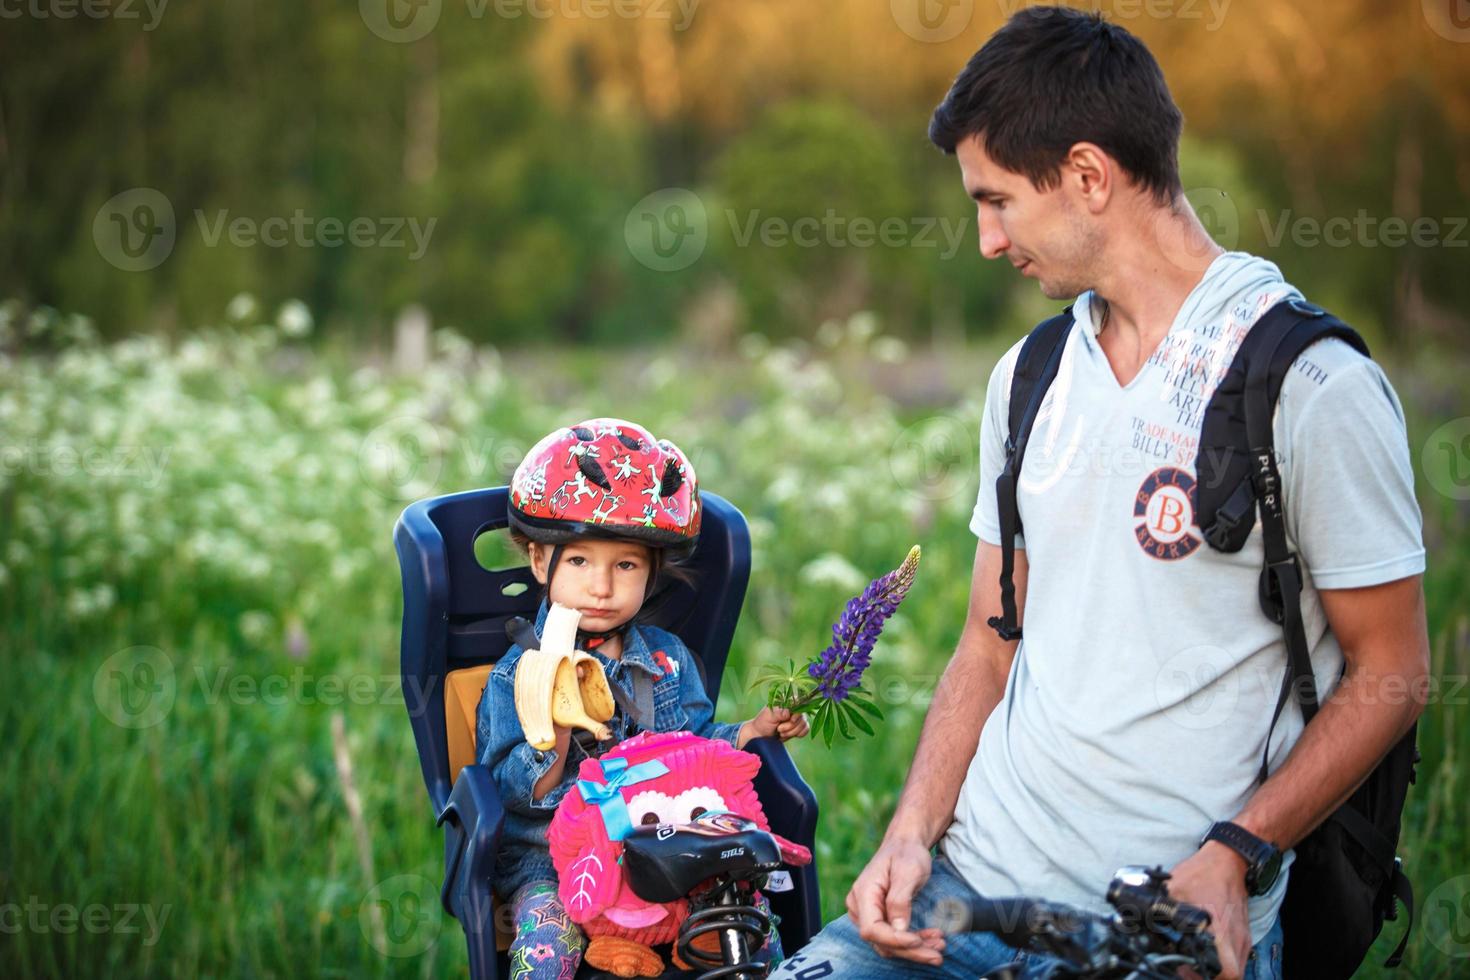 père avec une petite fille dans un siège de vélo pour enfants sur un vélo adulte. une fille dans un casque de protection, avec une banane et un sac à dos. balade sportive familiale, sécurité. Kaluga, Russie, 30 mai 2018 photo